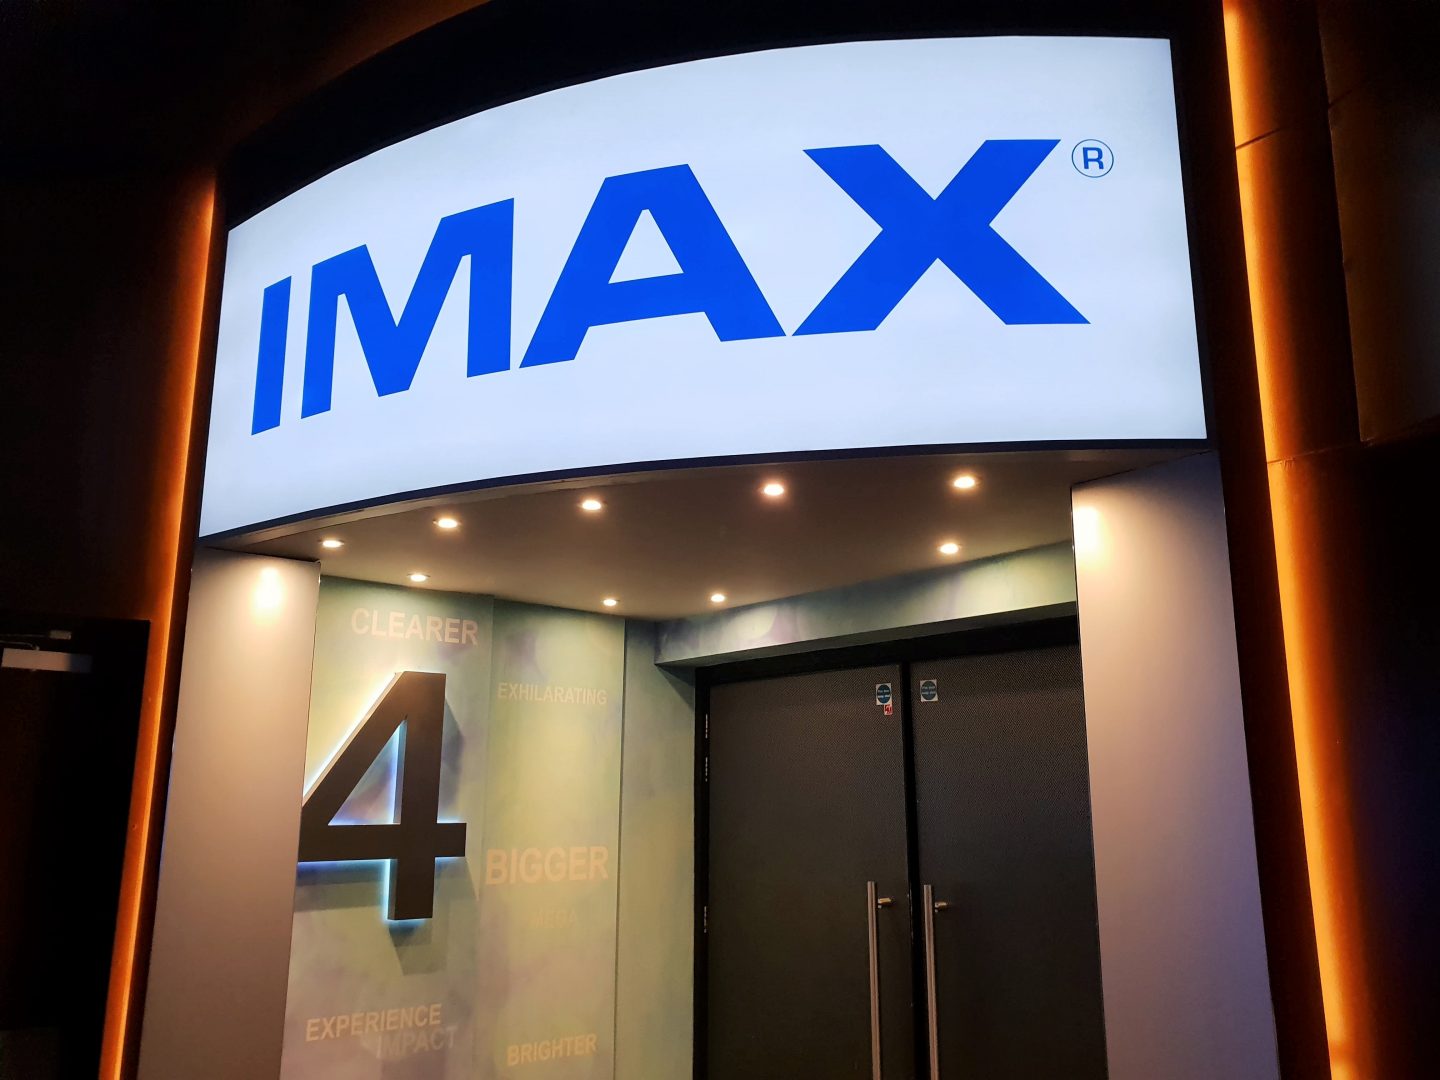 IMAX cinema at Bluewater